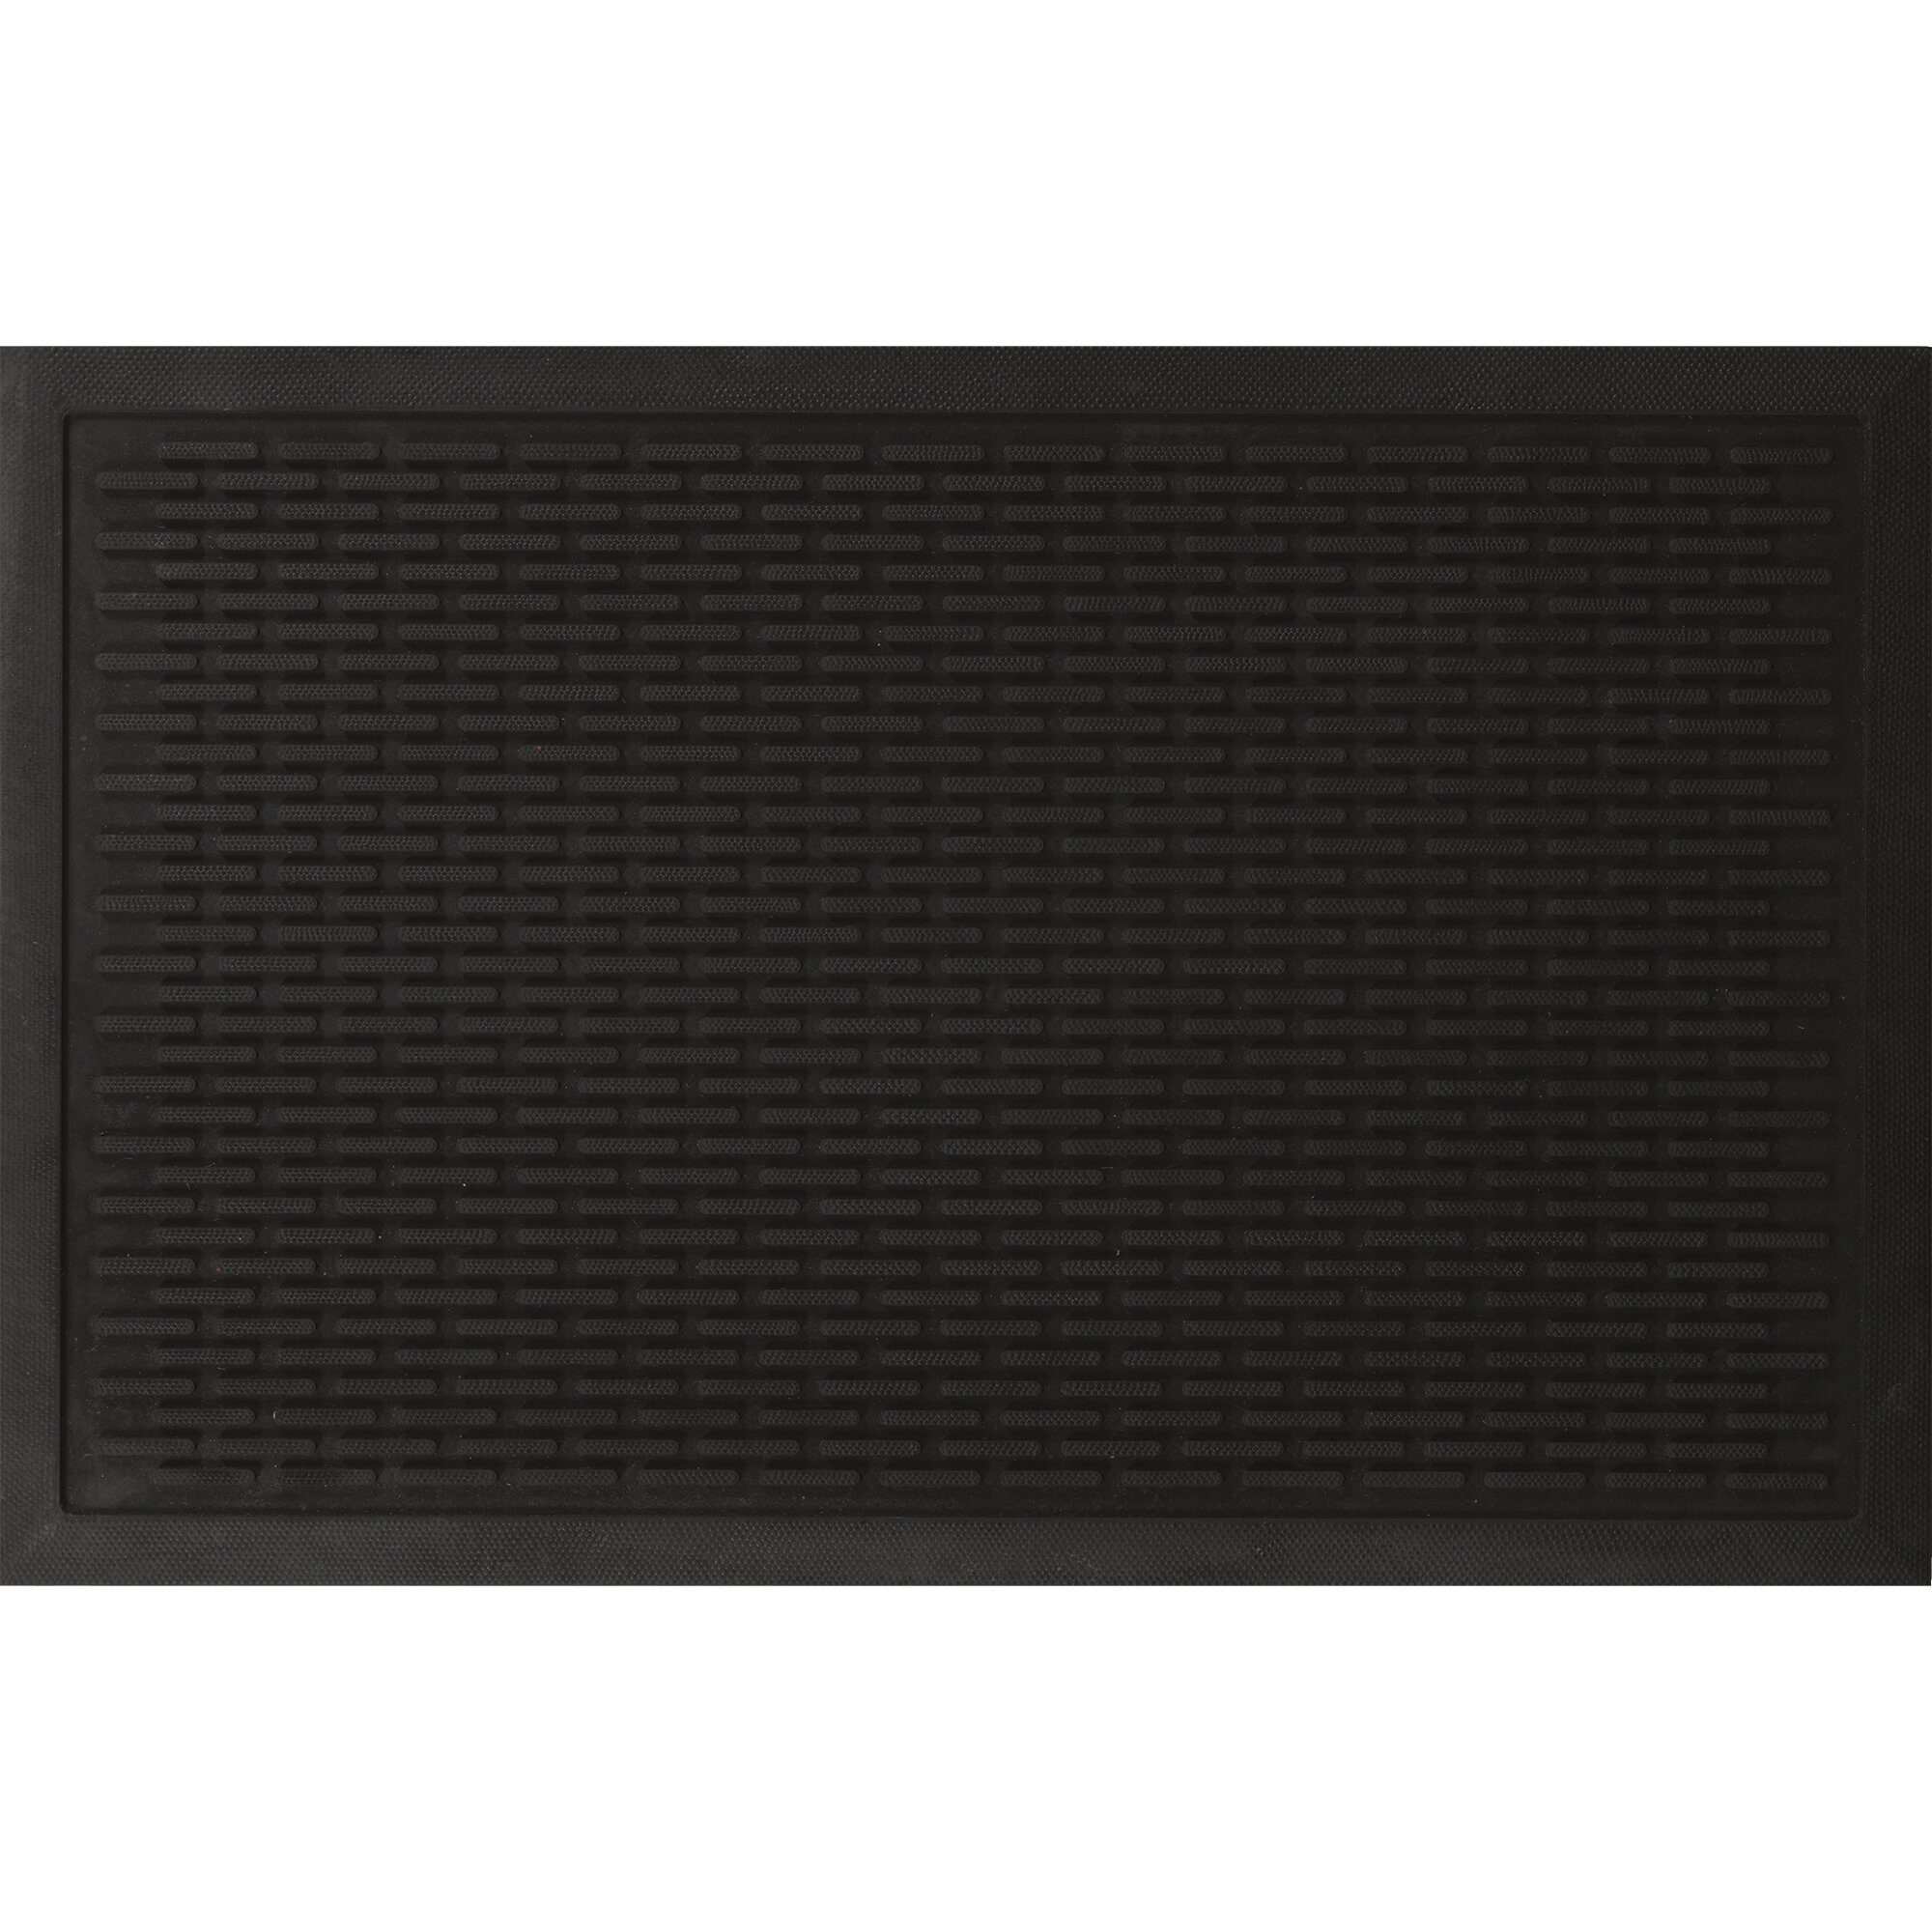 https://assets.wfcdn.com/im/06155254/compr-r85/3965/39650490/easy-clean-waterproof-non-slip-indooroutdoor-rubber-doormat-black.jpg